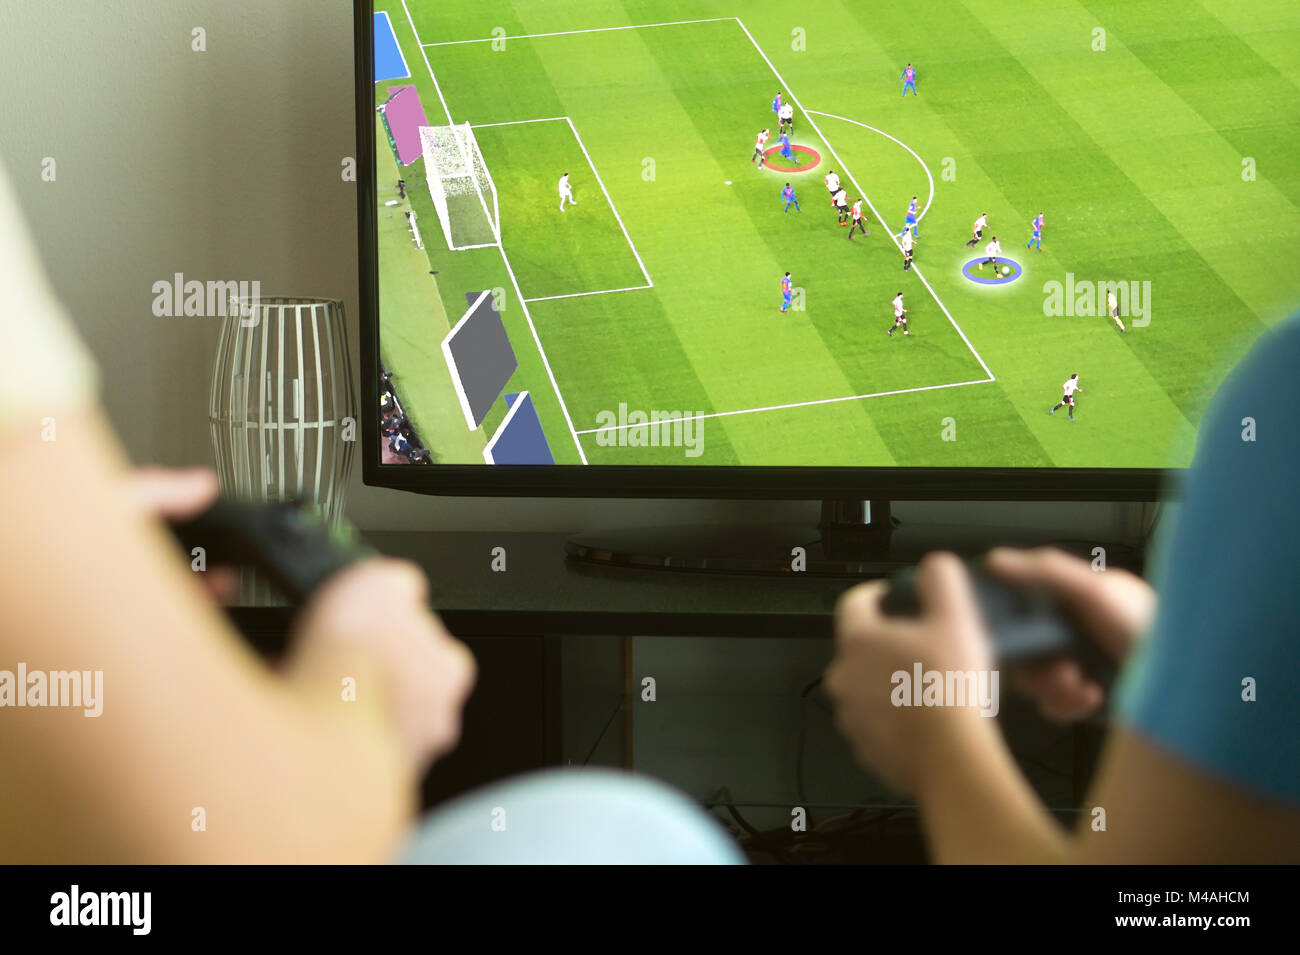 Deux gars jouant multijoueur imaginaire ou soccer Football jeu vidéo avec la console et tv. Les gars de la nuit, week-end et concept. Banque D'Images